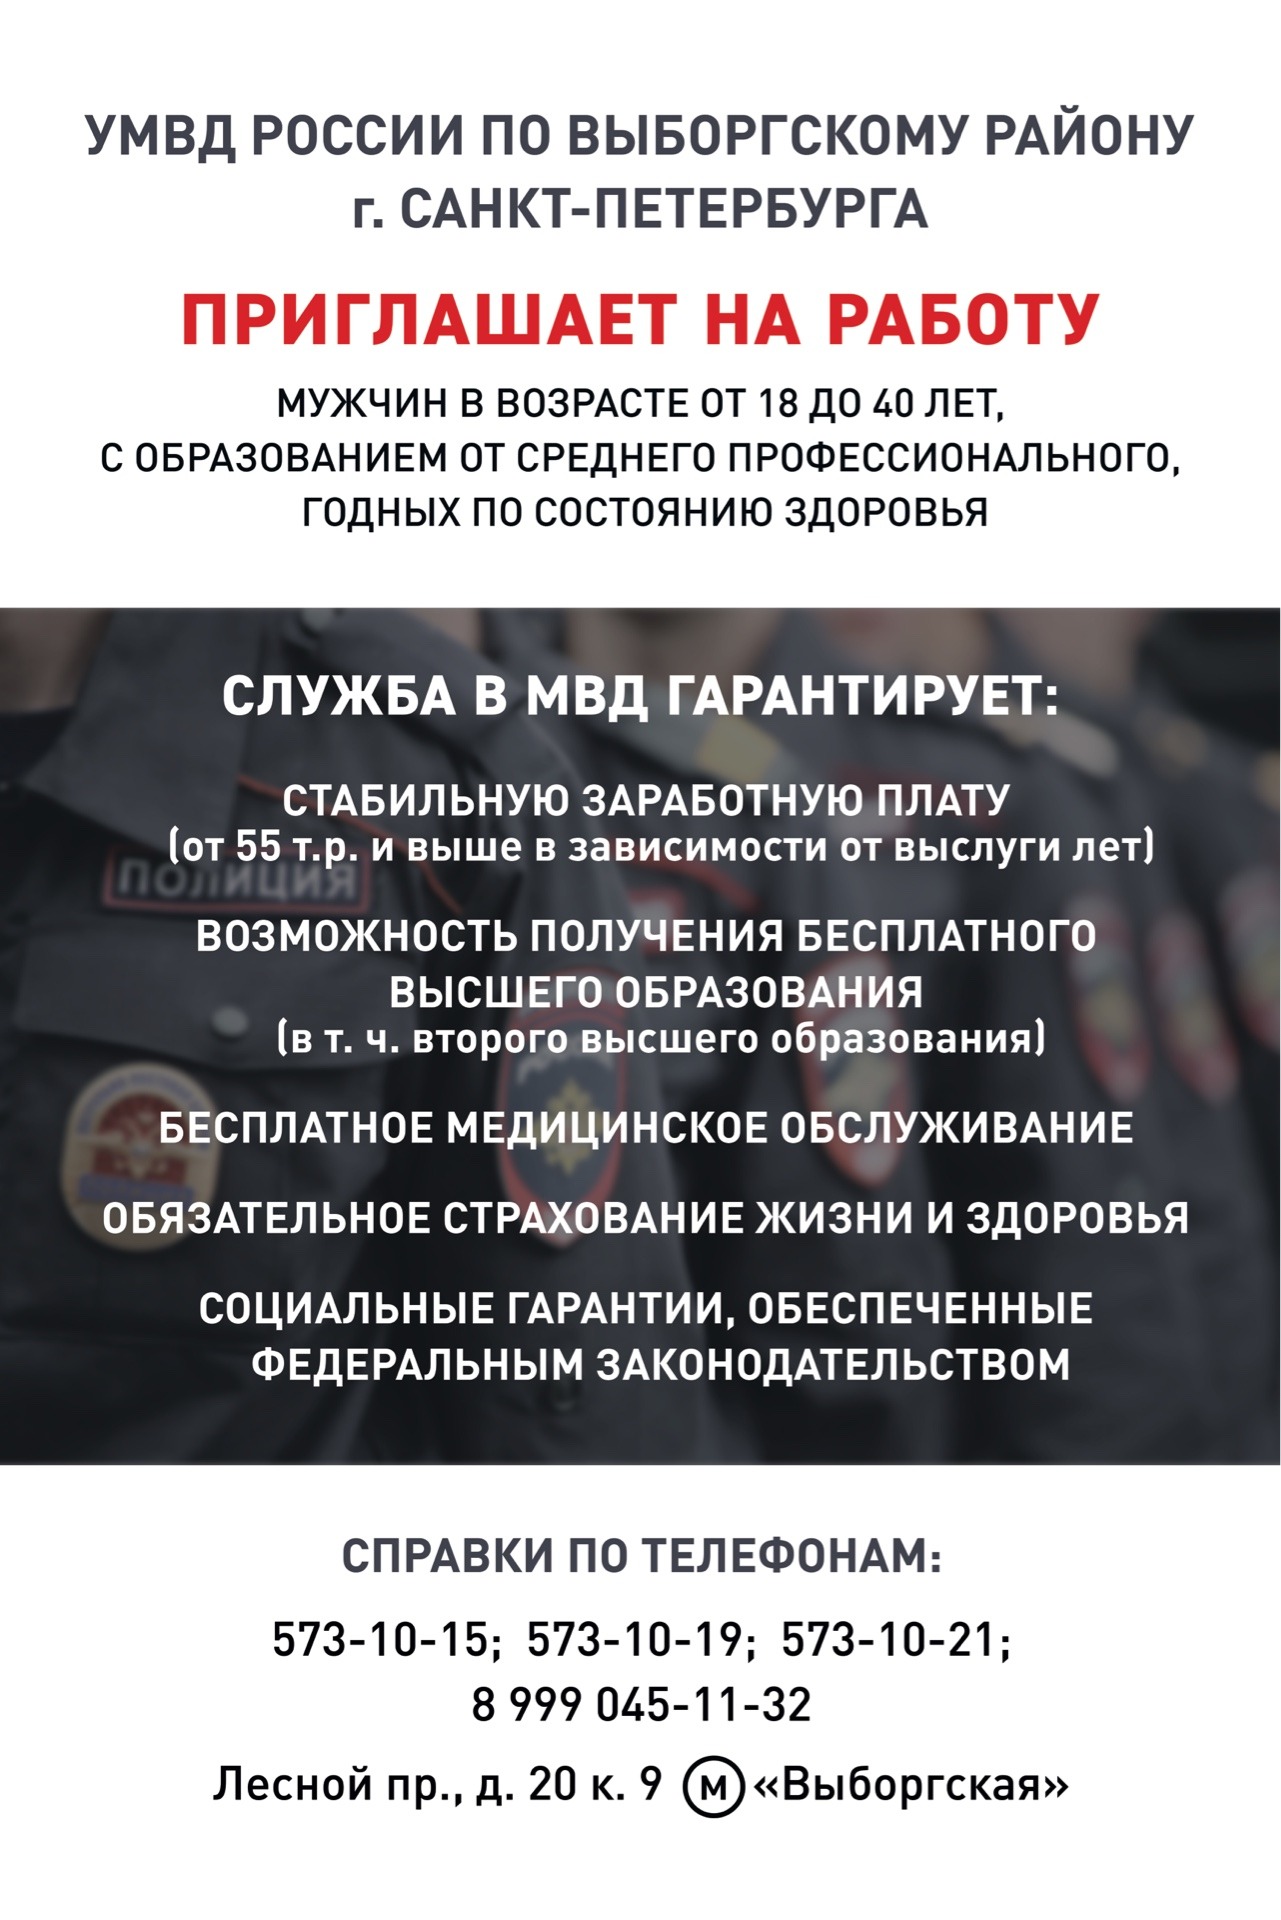 УМВД РОССИИ по Выборгскому району г. Санкт-Петербурга приглашает на службу в УМВД 